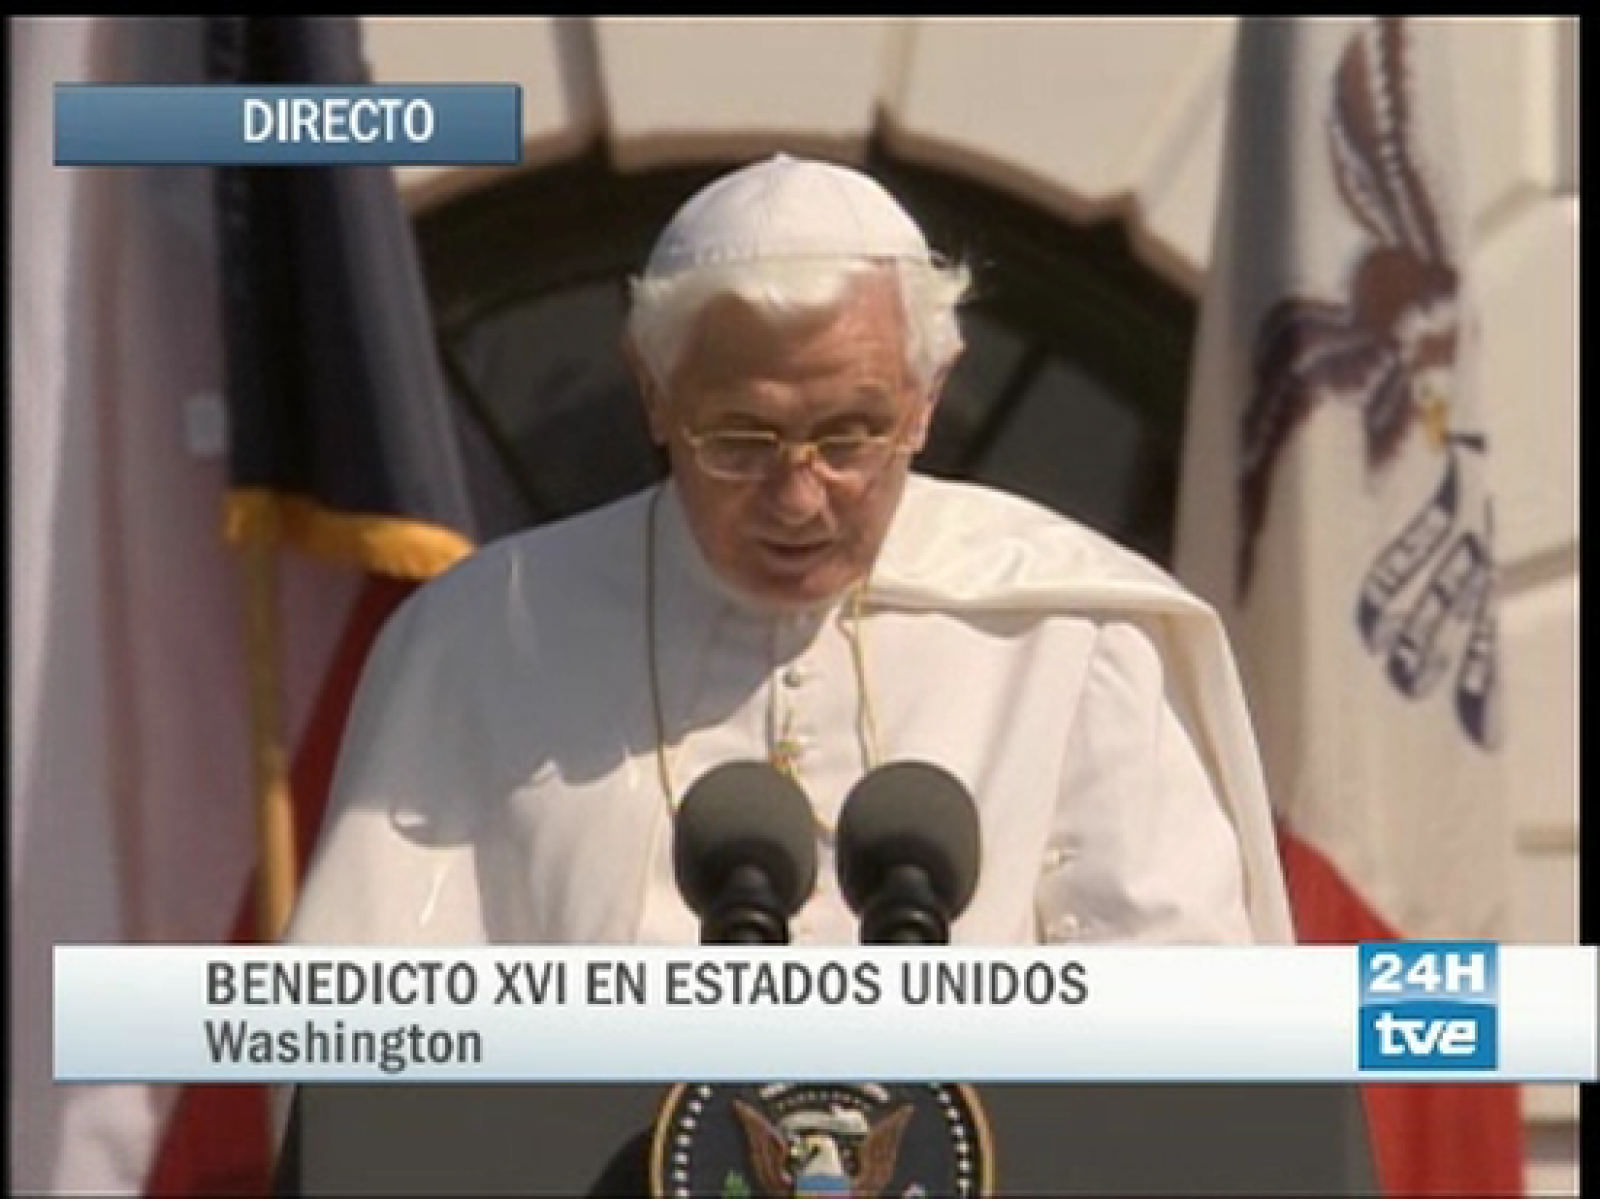   Benedicto XVI recuerda en su discurso ante Bush la esencia divina del ser humano, el día en que el Tribunal Supremo de EE.UU. ha aprobado el uso de inyección letal en ejecuciones.